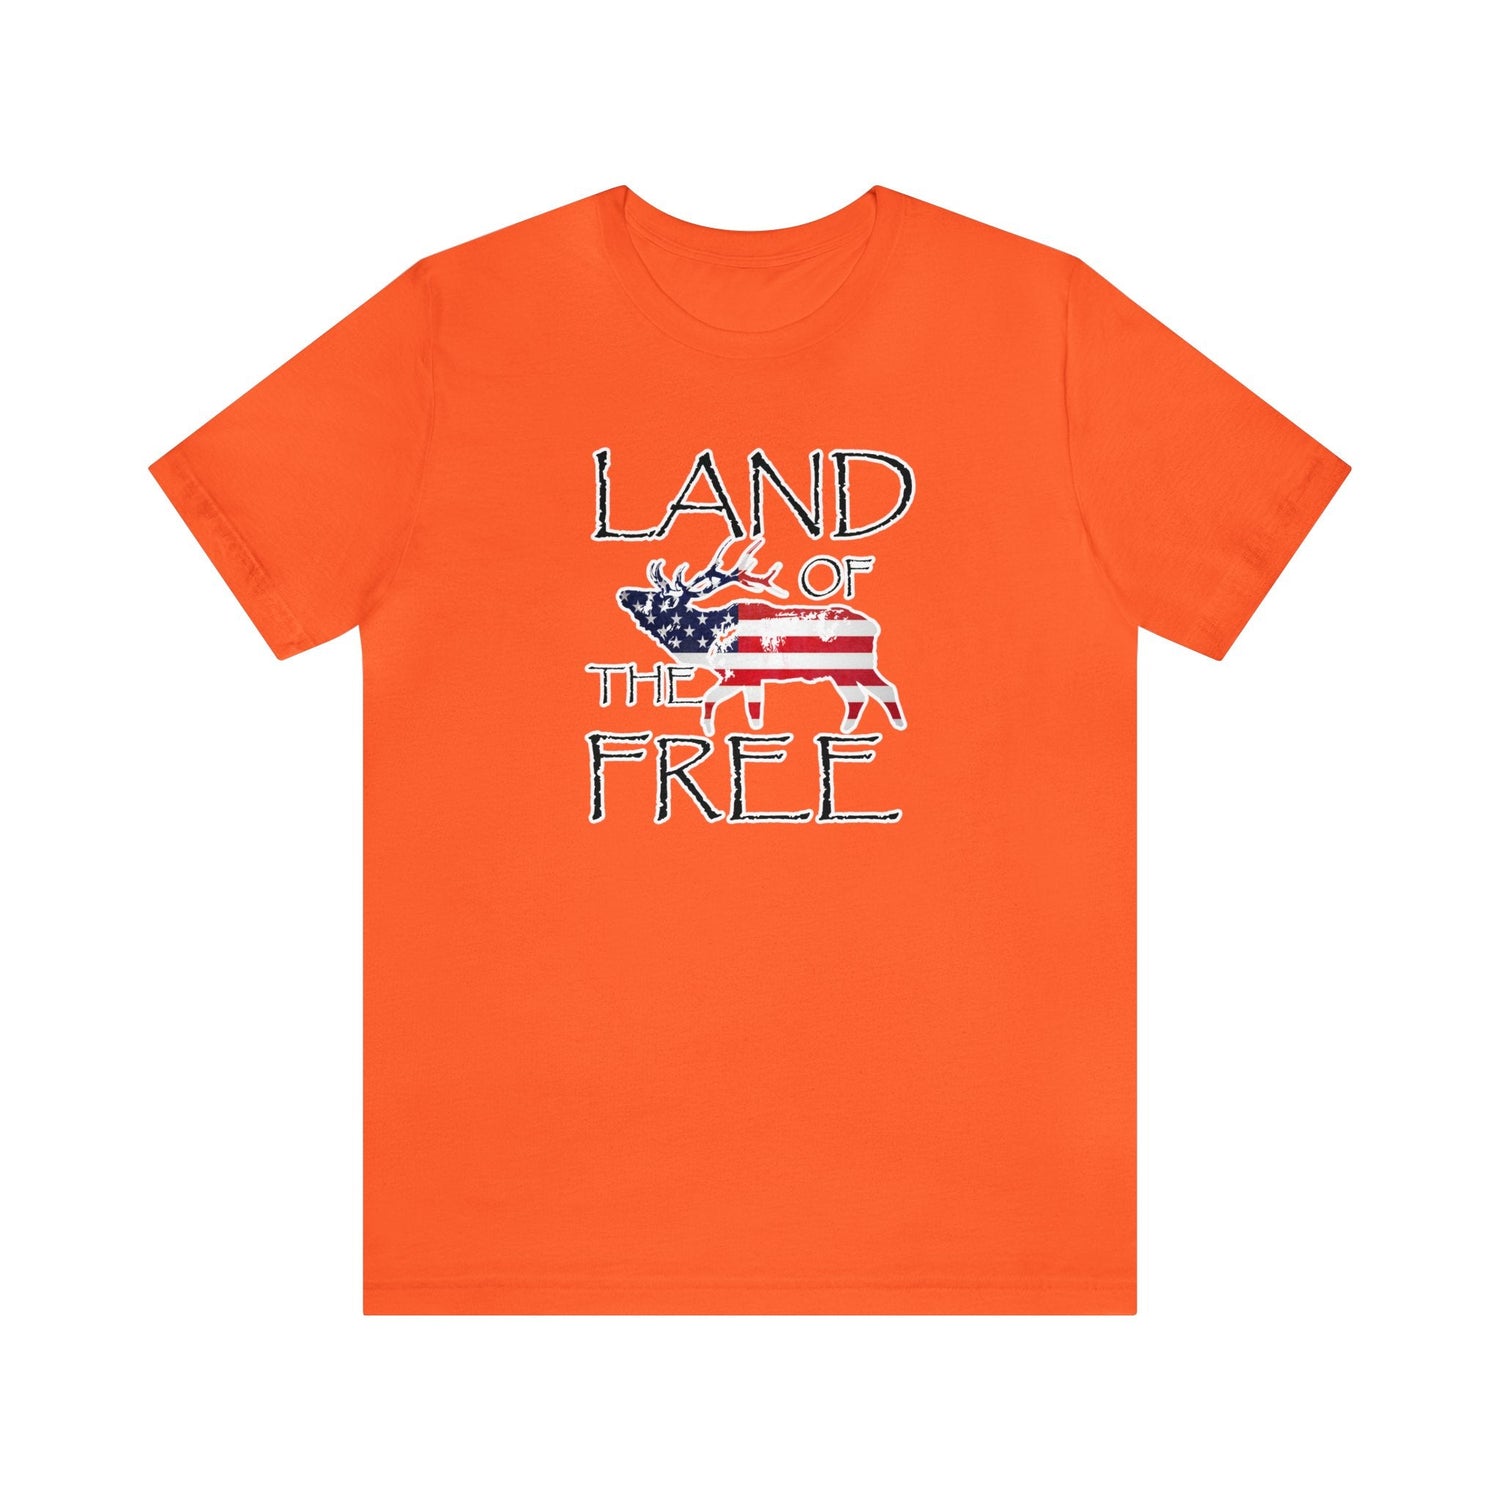 Western elk hunting t-shirt, color orange, front design placement